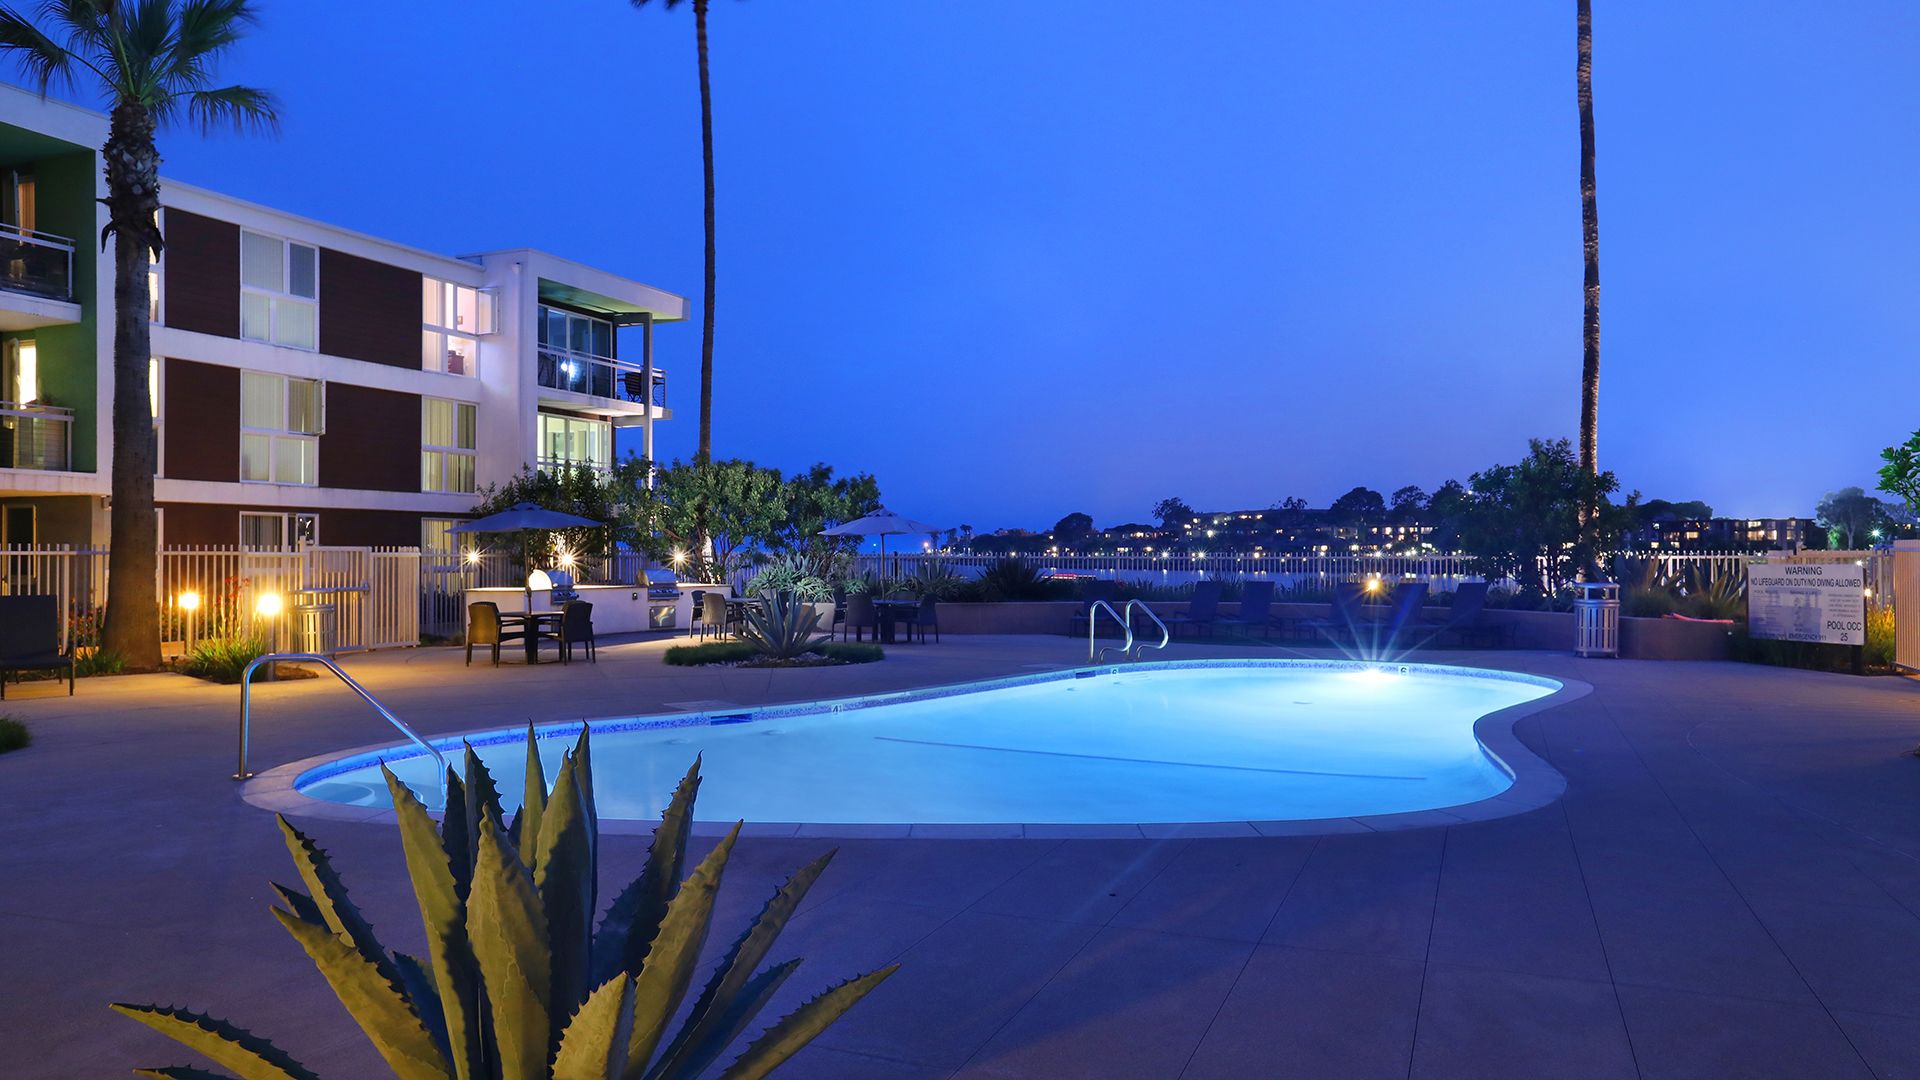 Simple Aqua Marina Apartments Marina Del Rey with Simple Decor